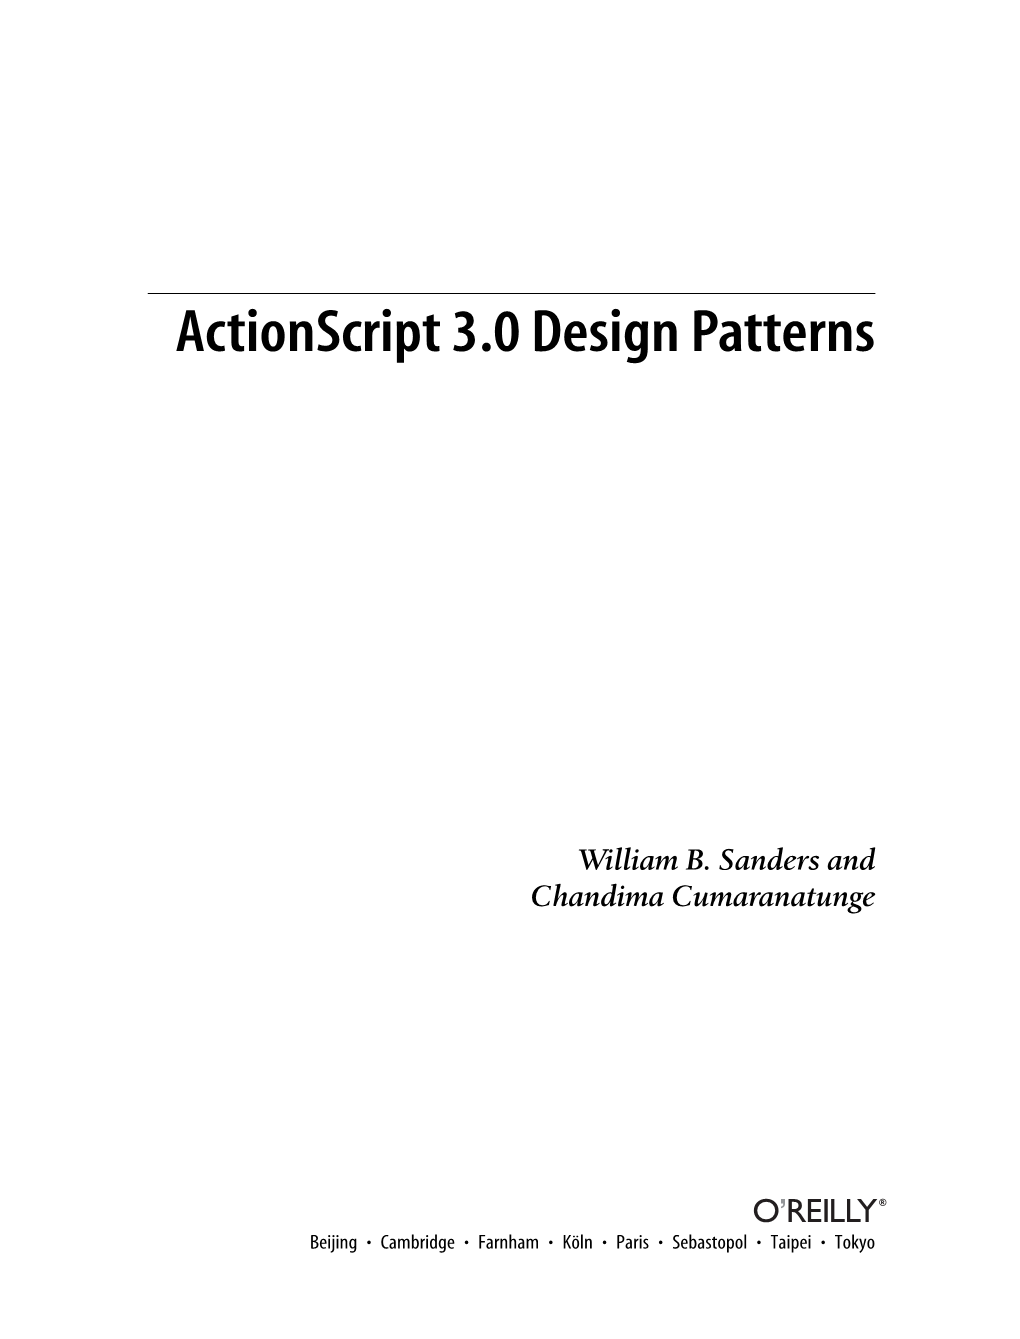 Actionscript 3.0 Design Patterns